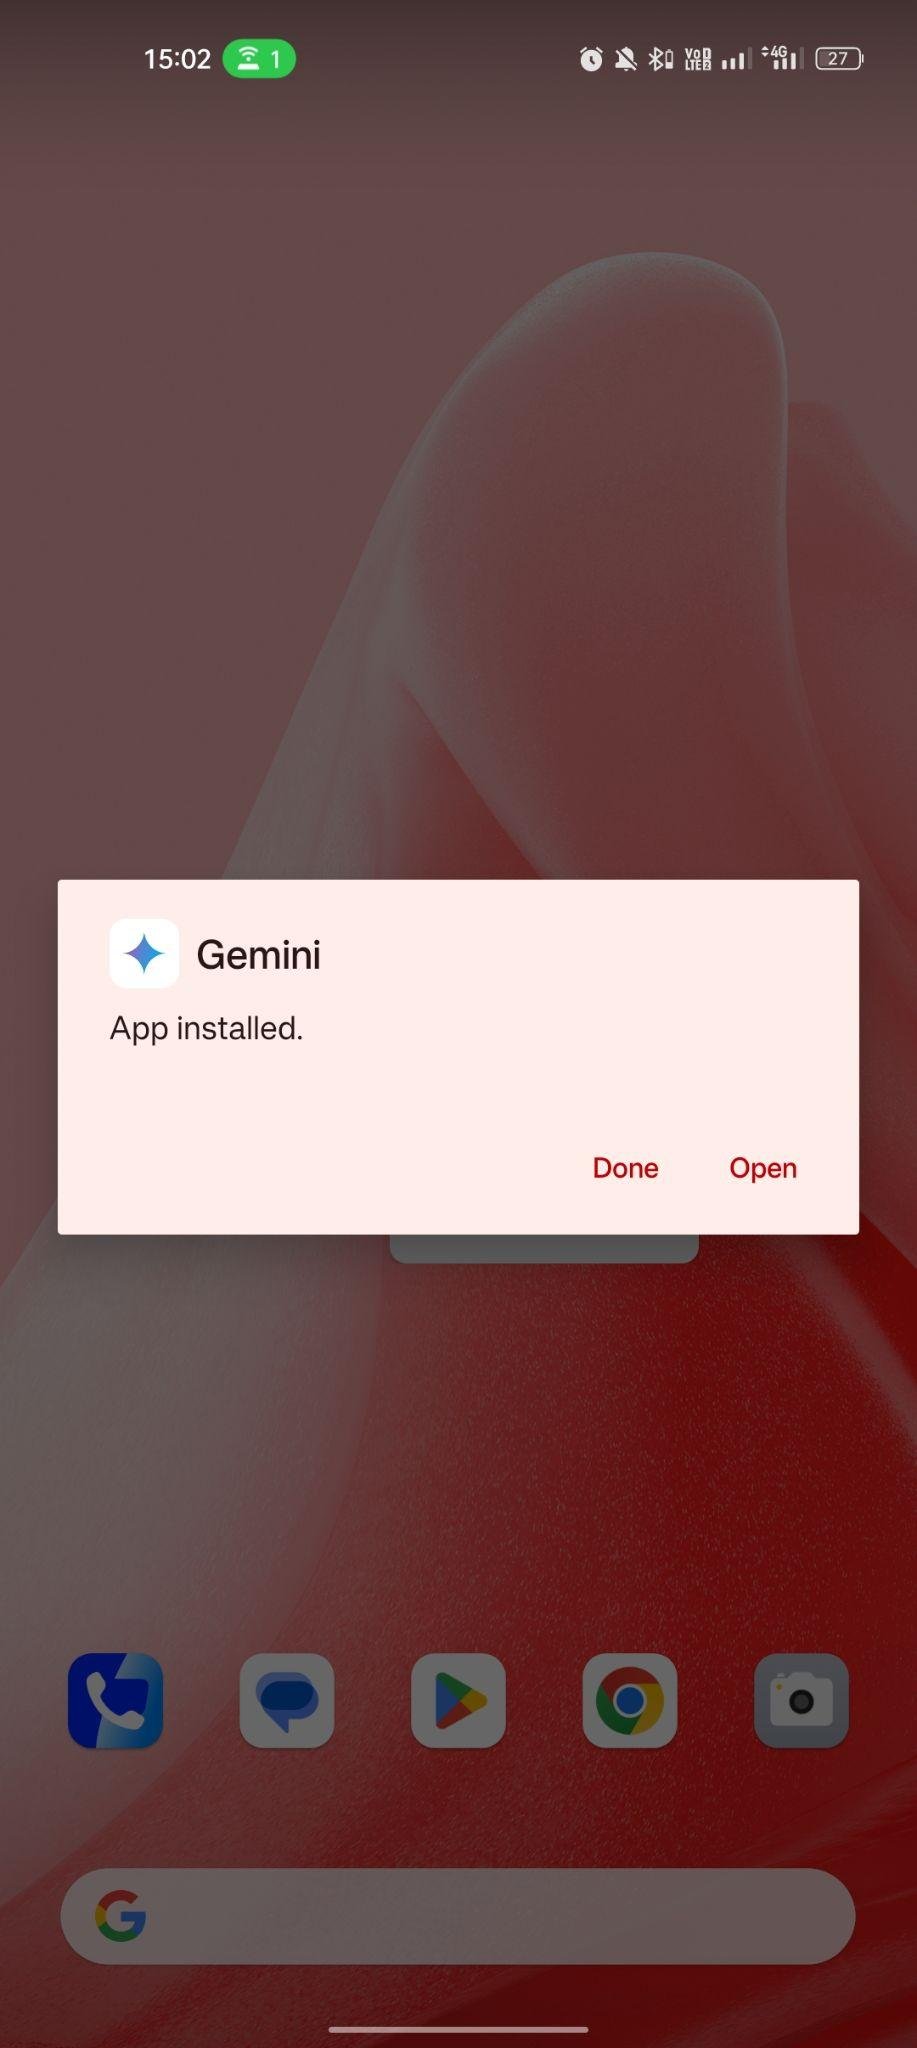 Gemini apk installed